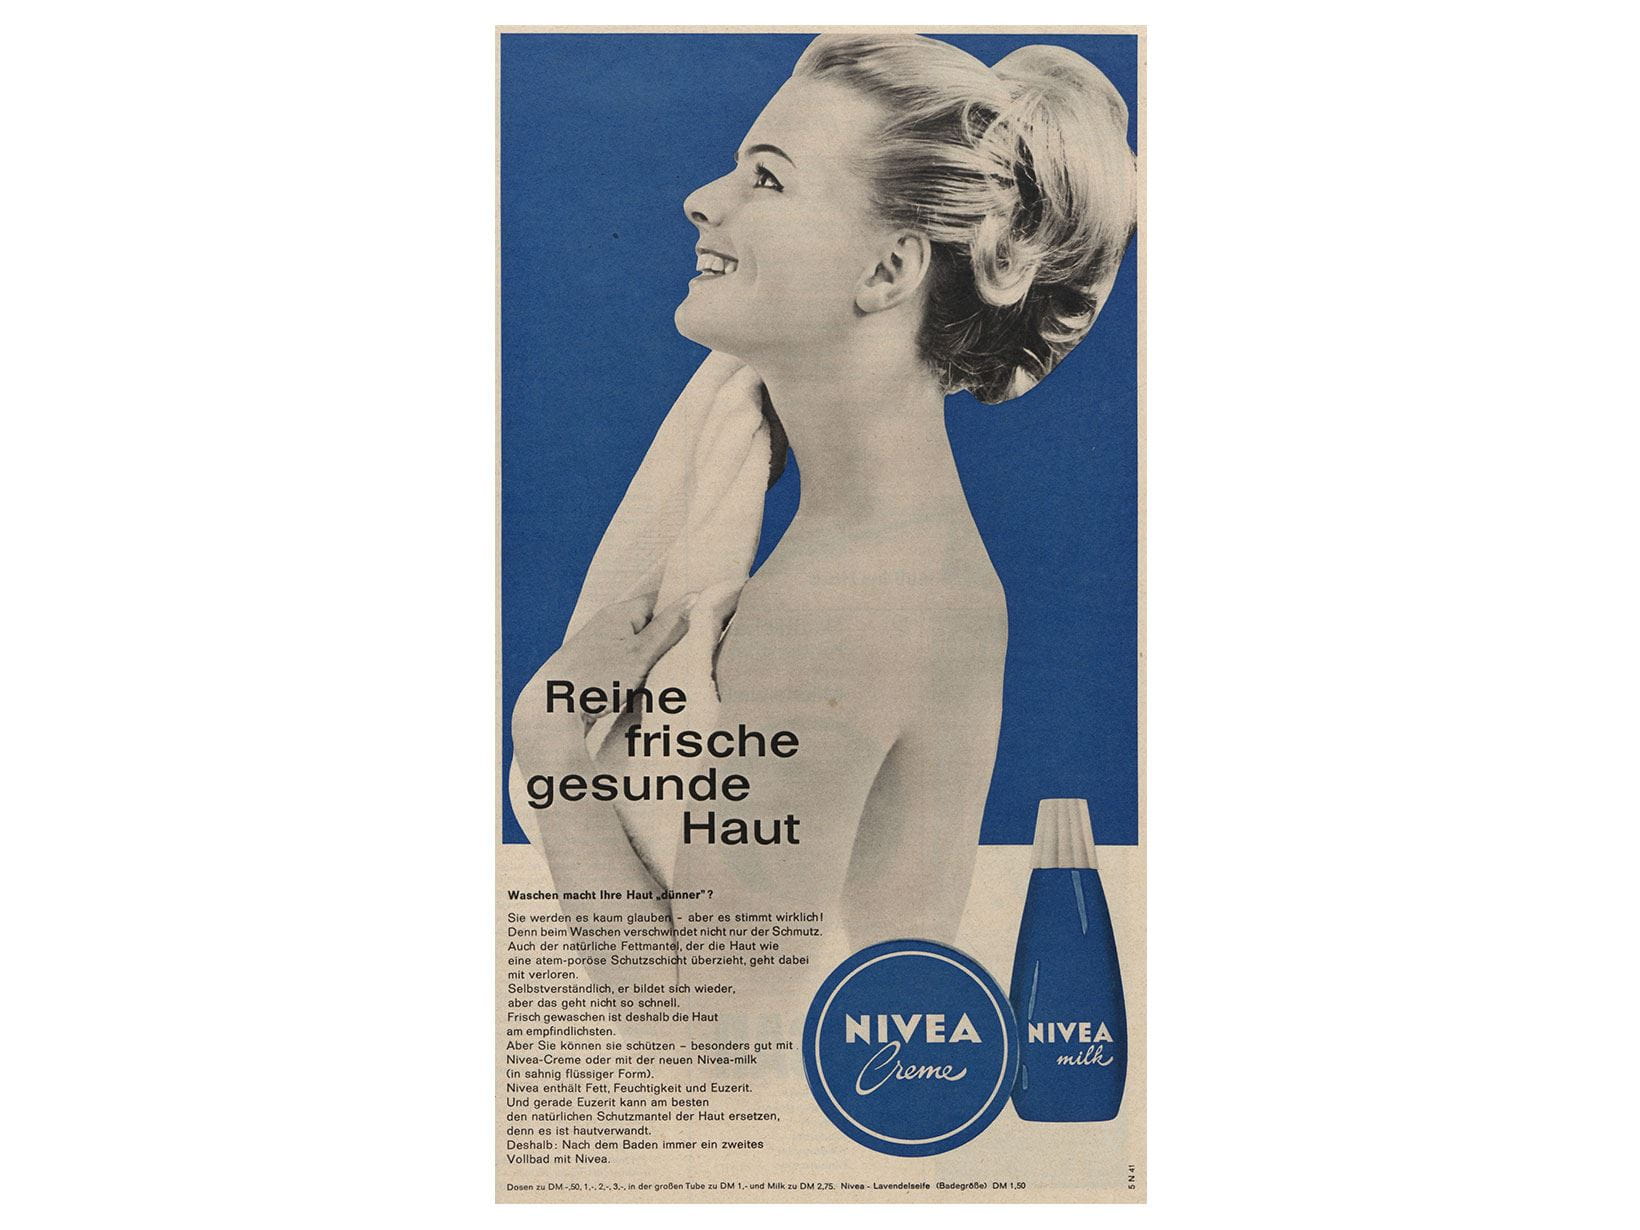 NIVEA Creme und Milk Werbeanzeige von 1964